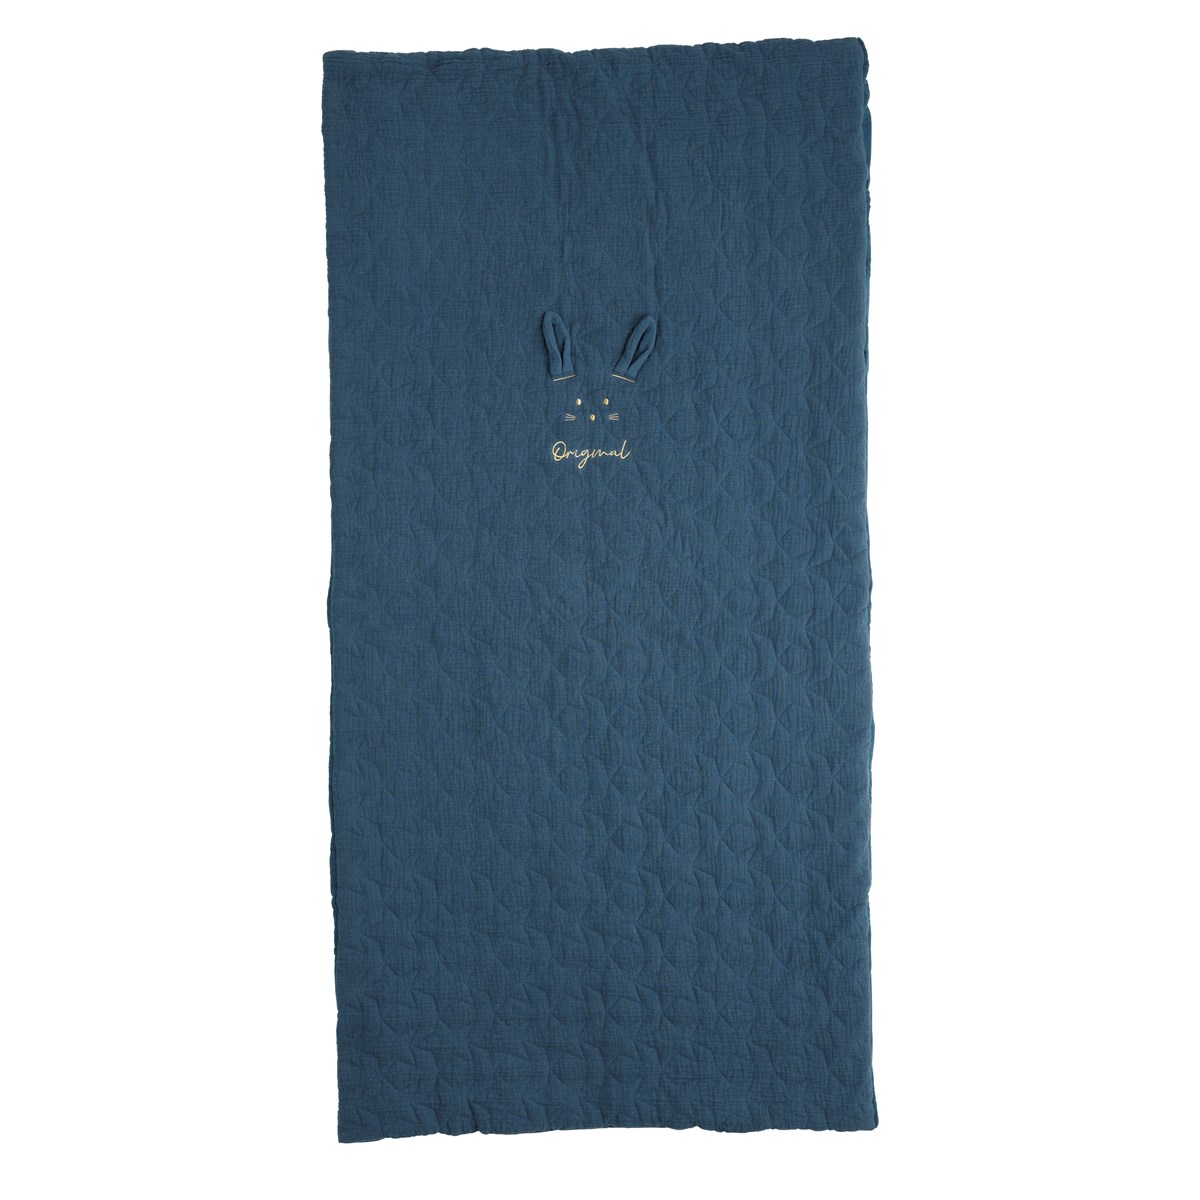 Edredon pour lit évolutif 140x100cm en coton bleu nuit